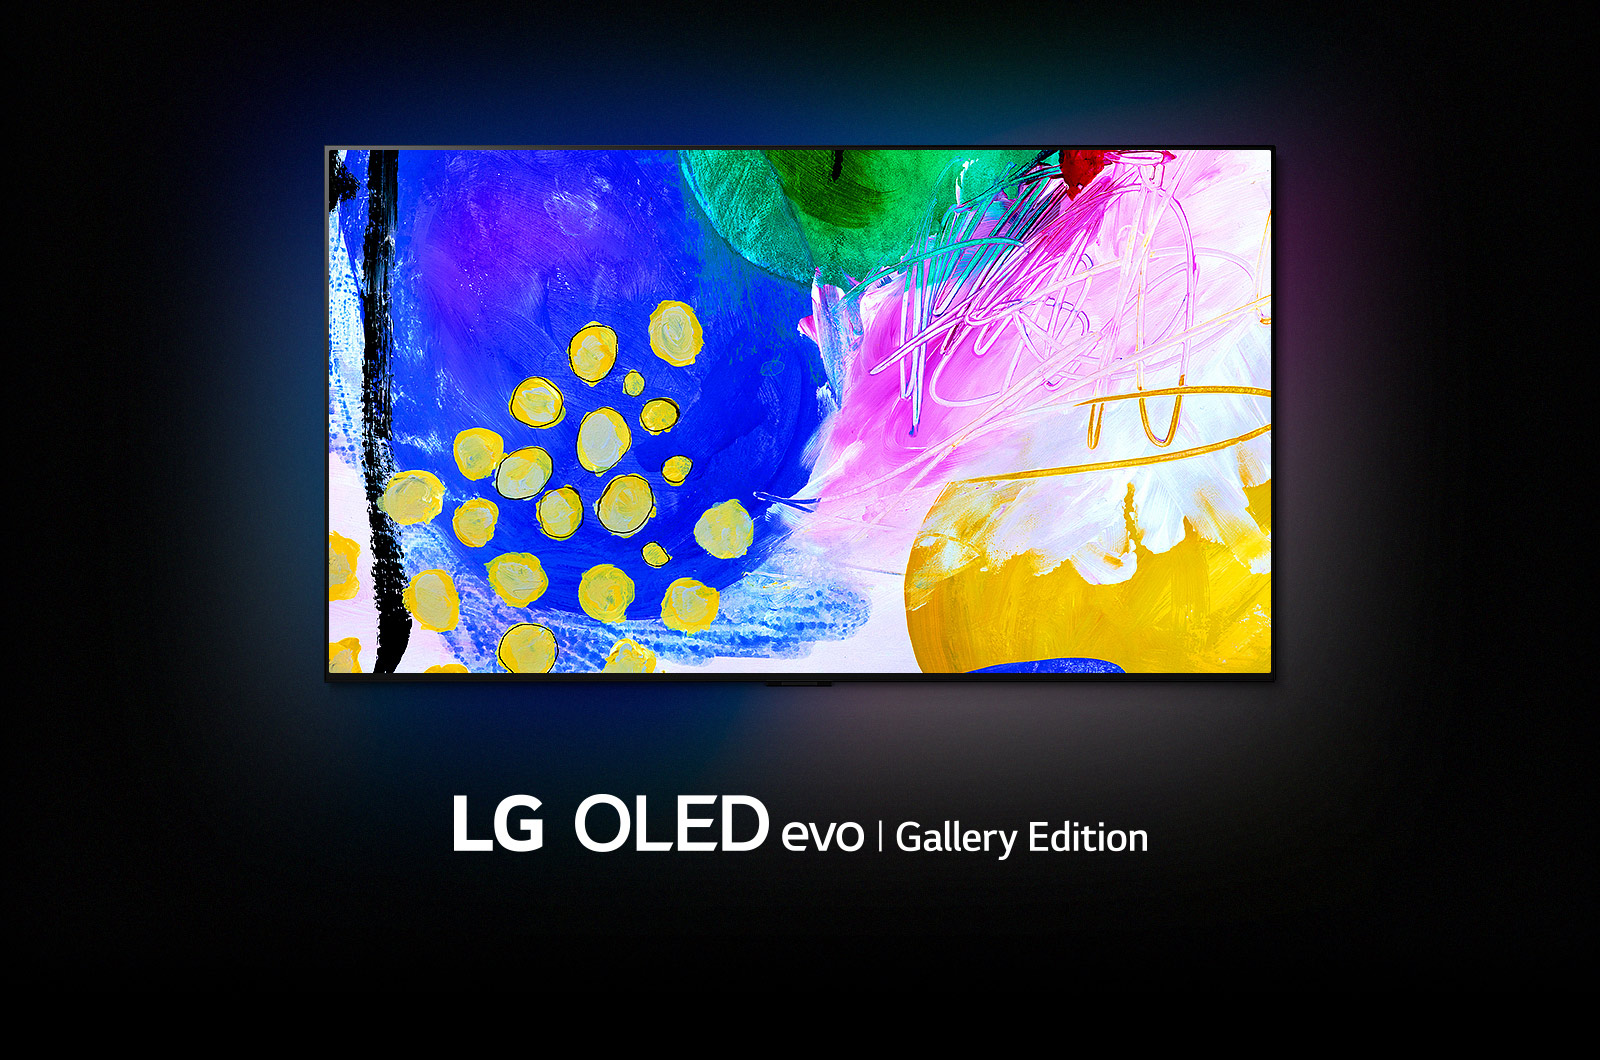 LG OLED G2は、画面にカラフルな抽象的なアート作品と「Lg Oled Evo Gallery Edition」という言葉が下にある暗い部屋にあります。